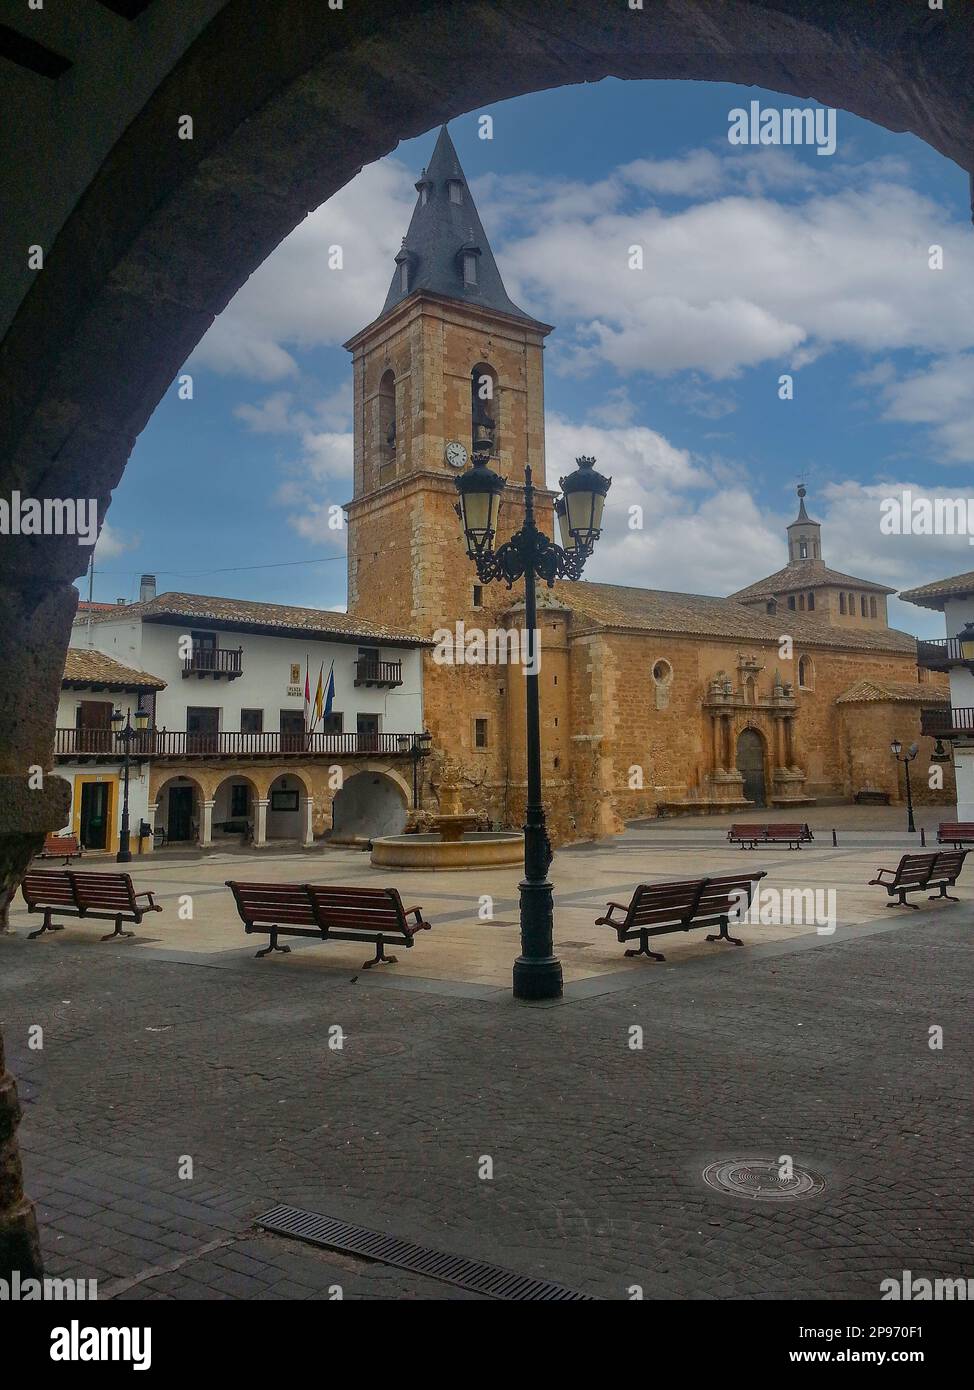 Central square in the town of Tarazona de la Mancha, province of Albacete, Spain. Stock Photo